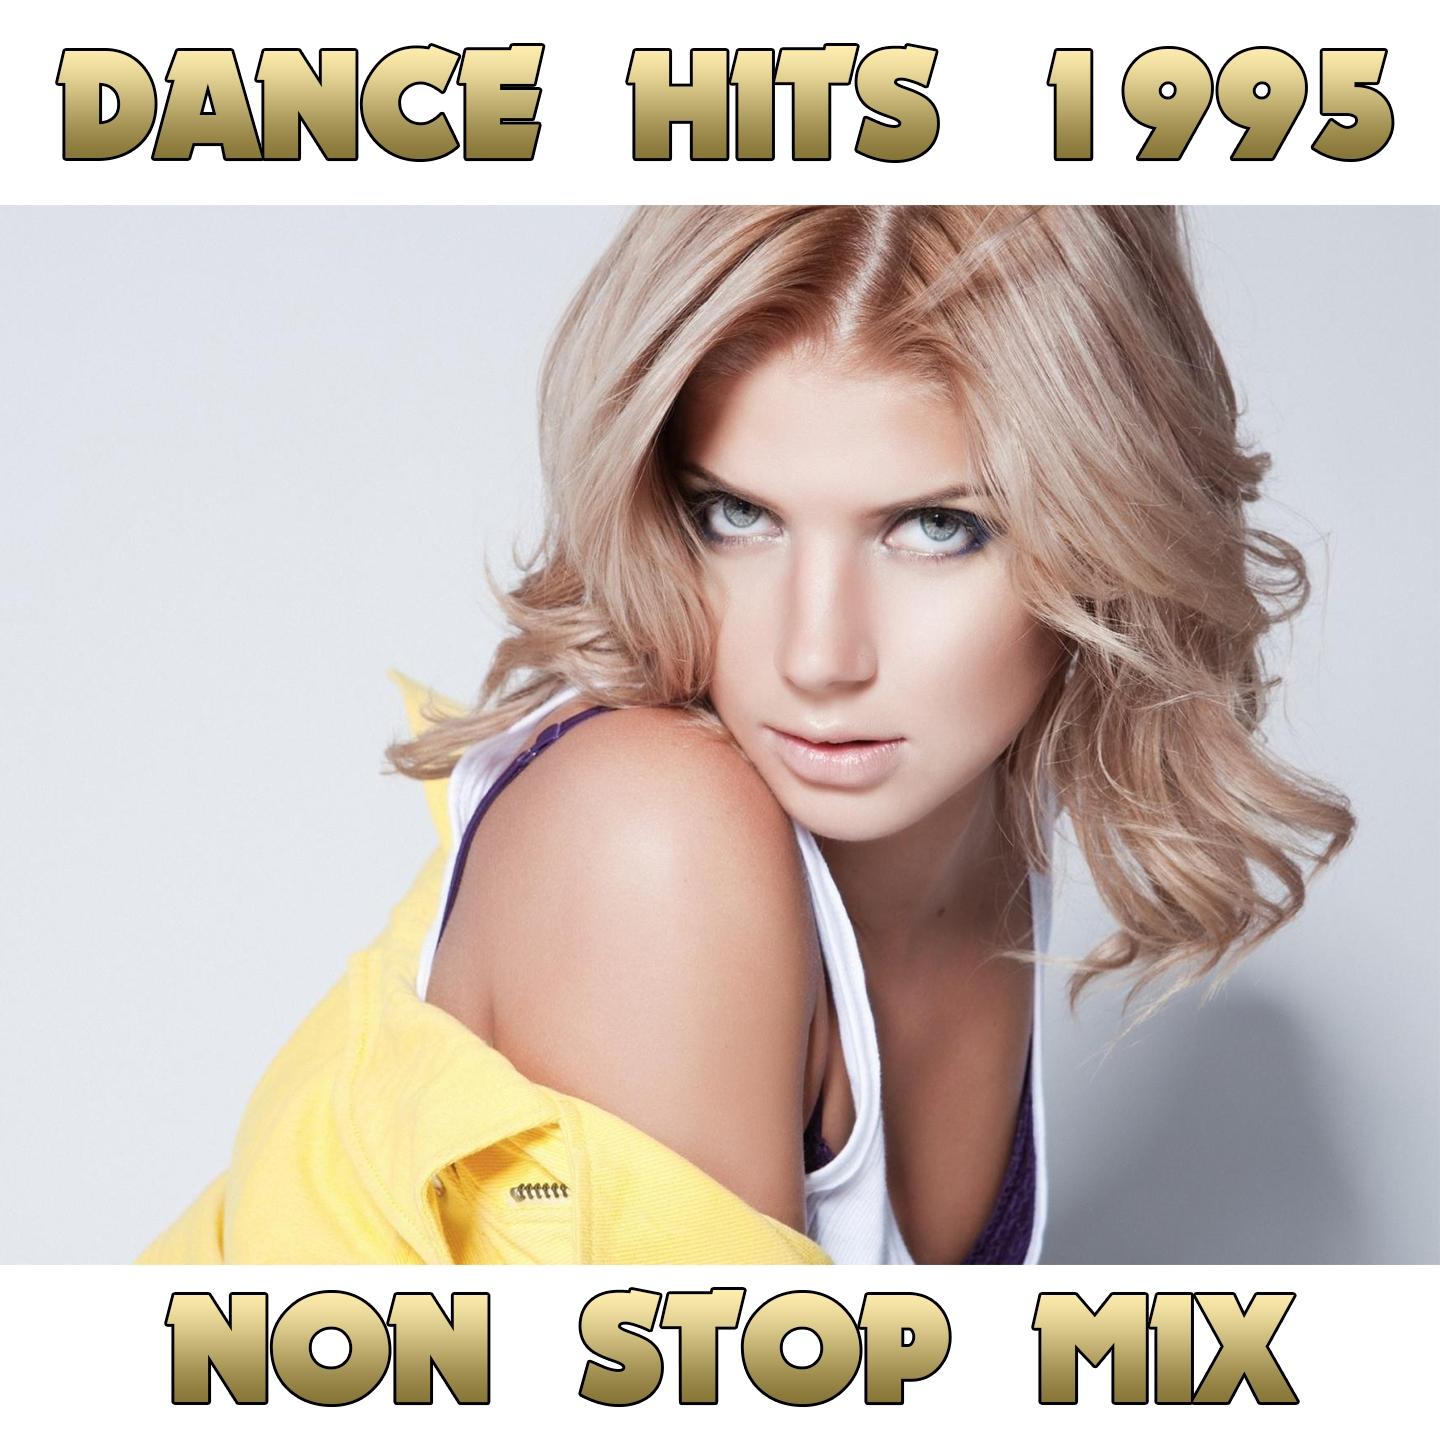 Dance Hits 1995 Non Sop Mix, Vol. 1